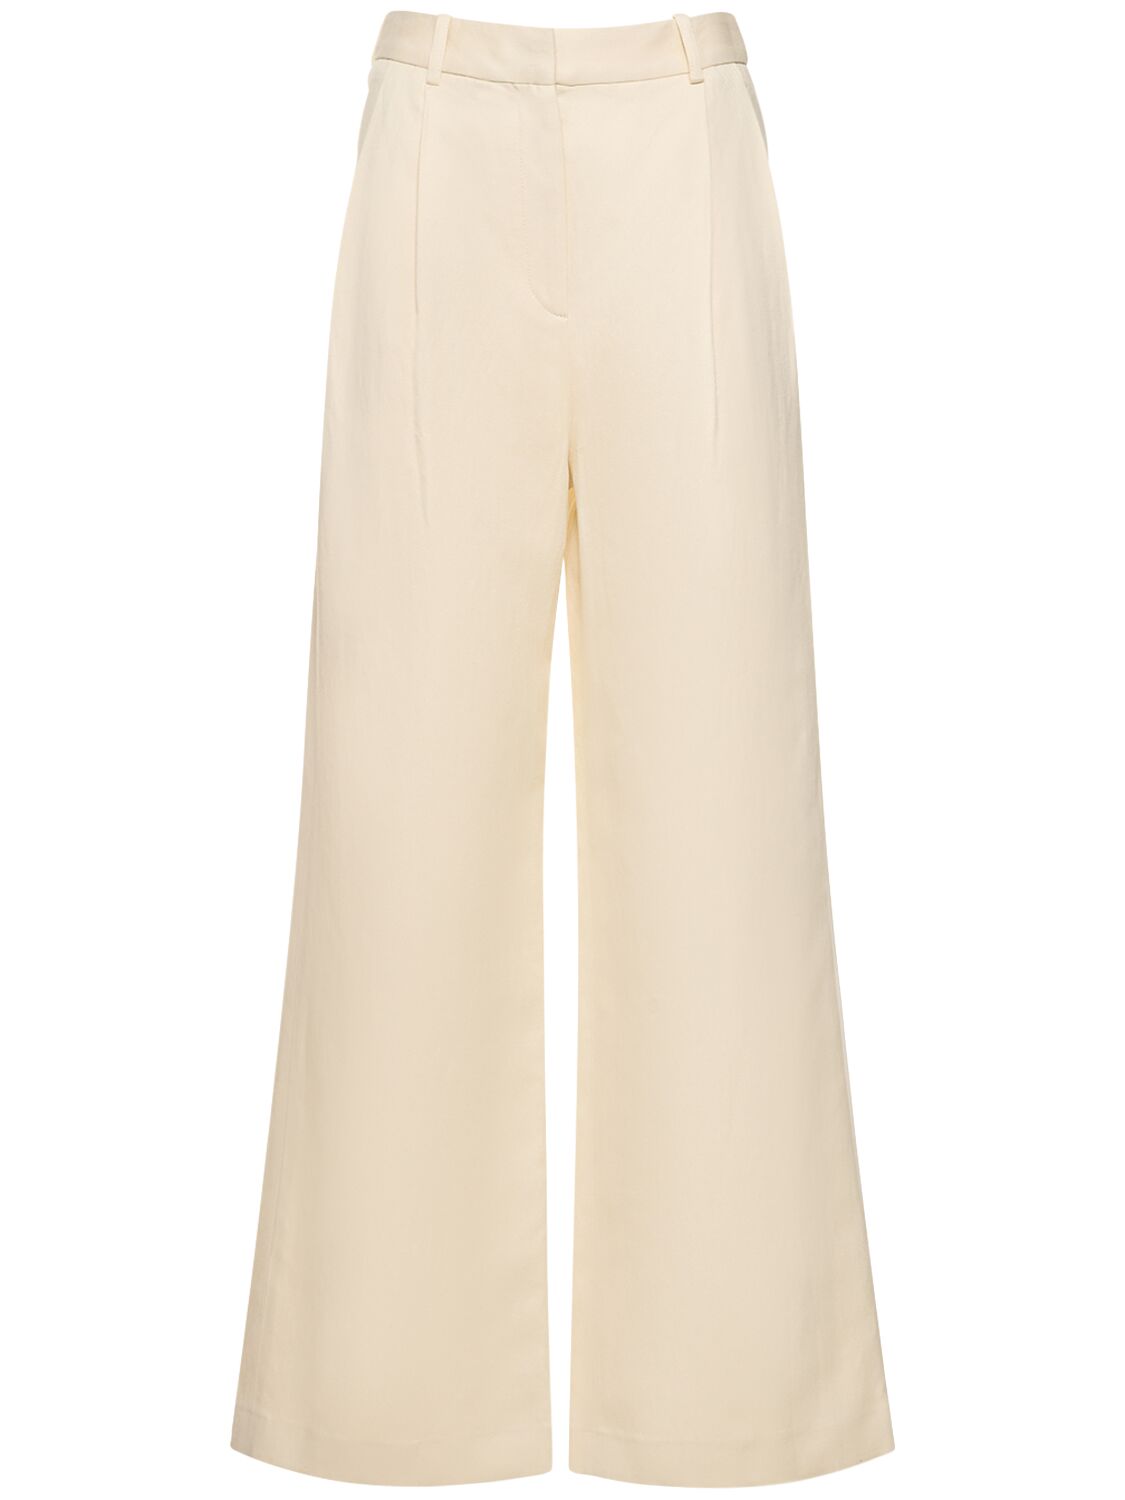 Loulou Studio Idai Cotton & Linen Trousers In White